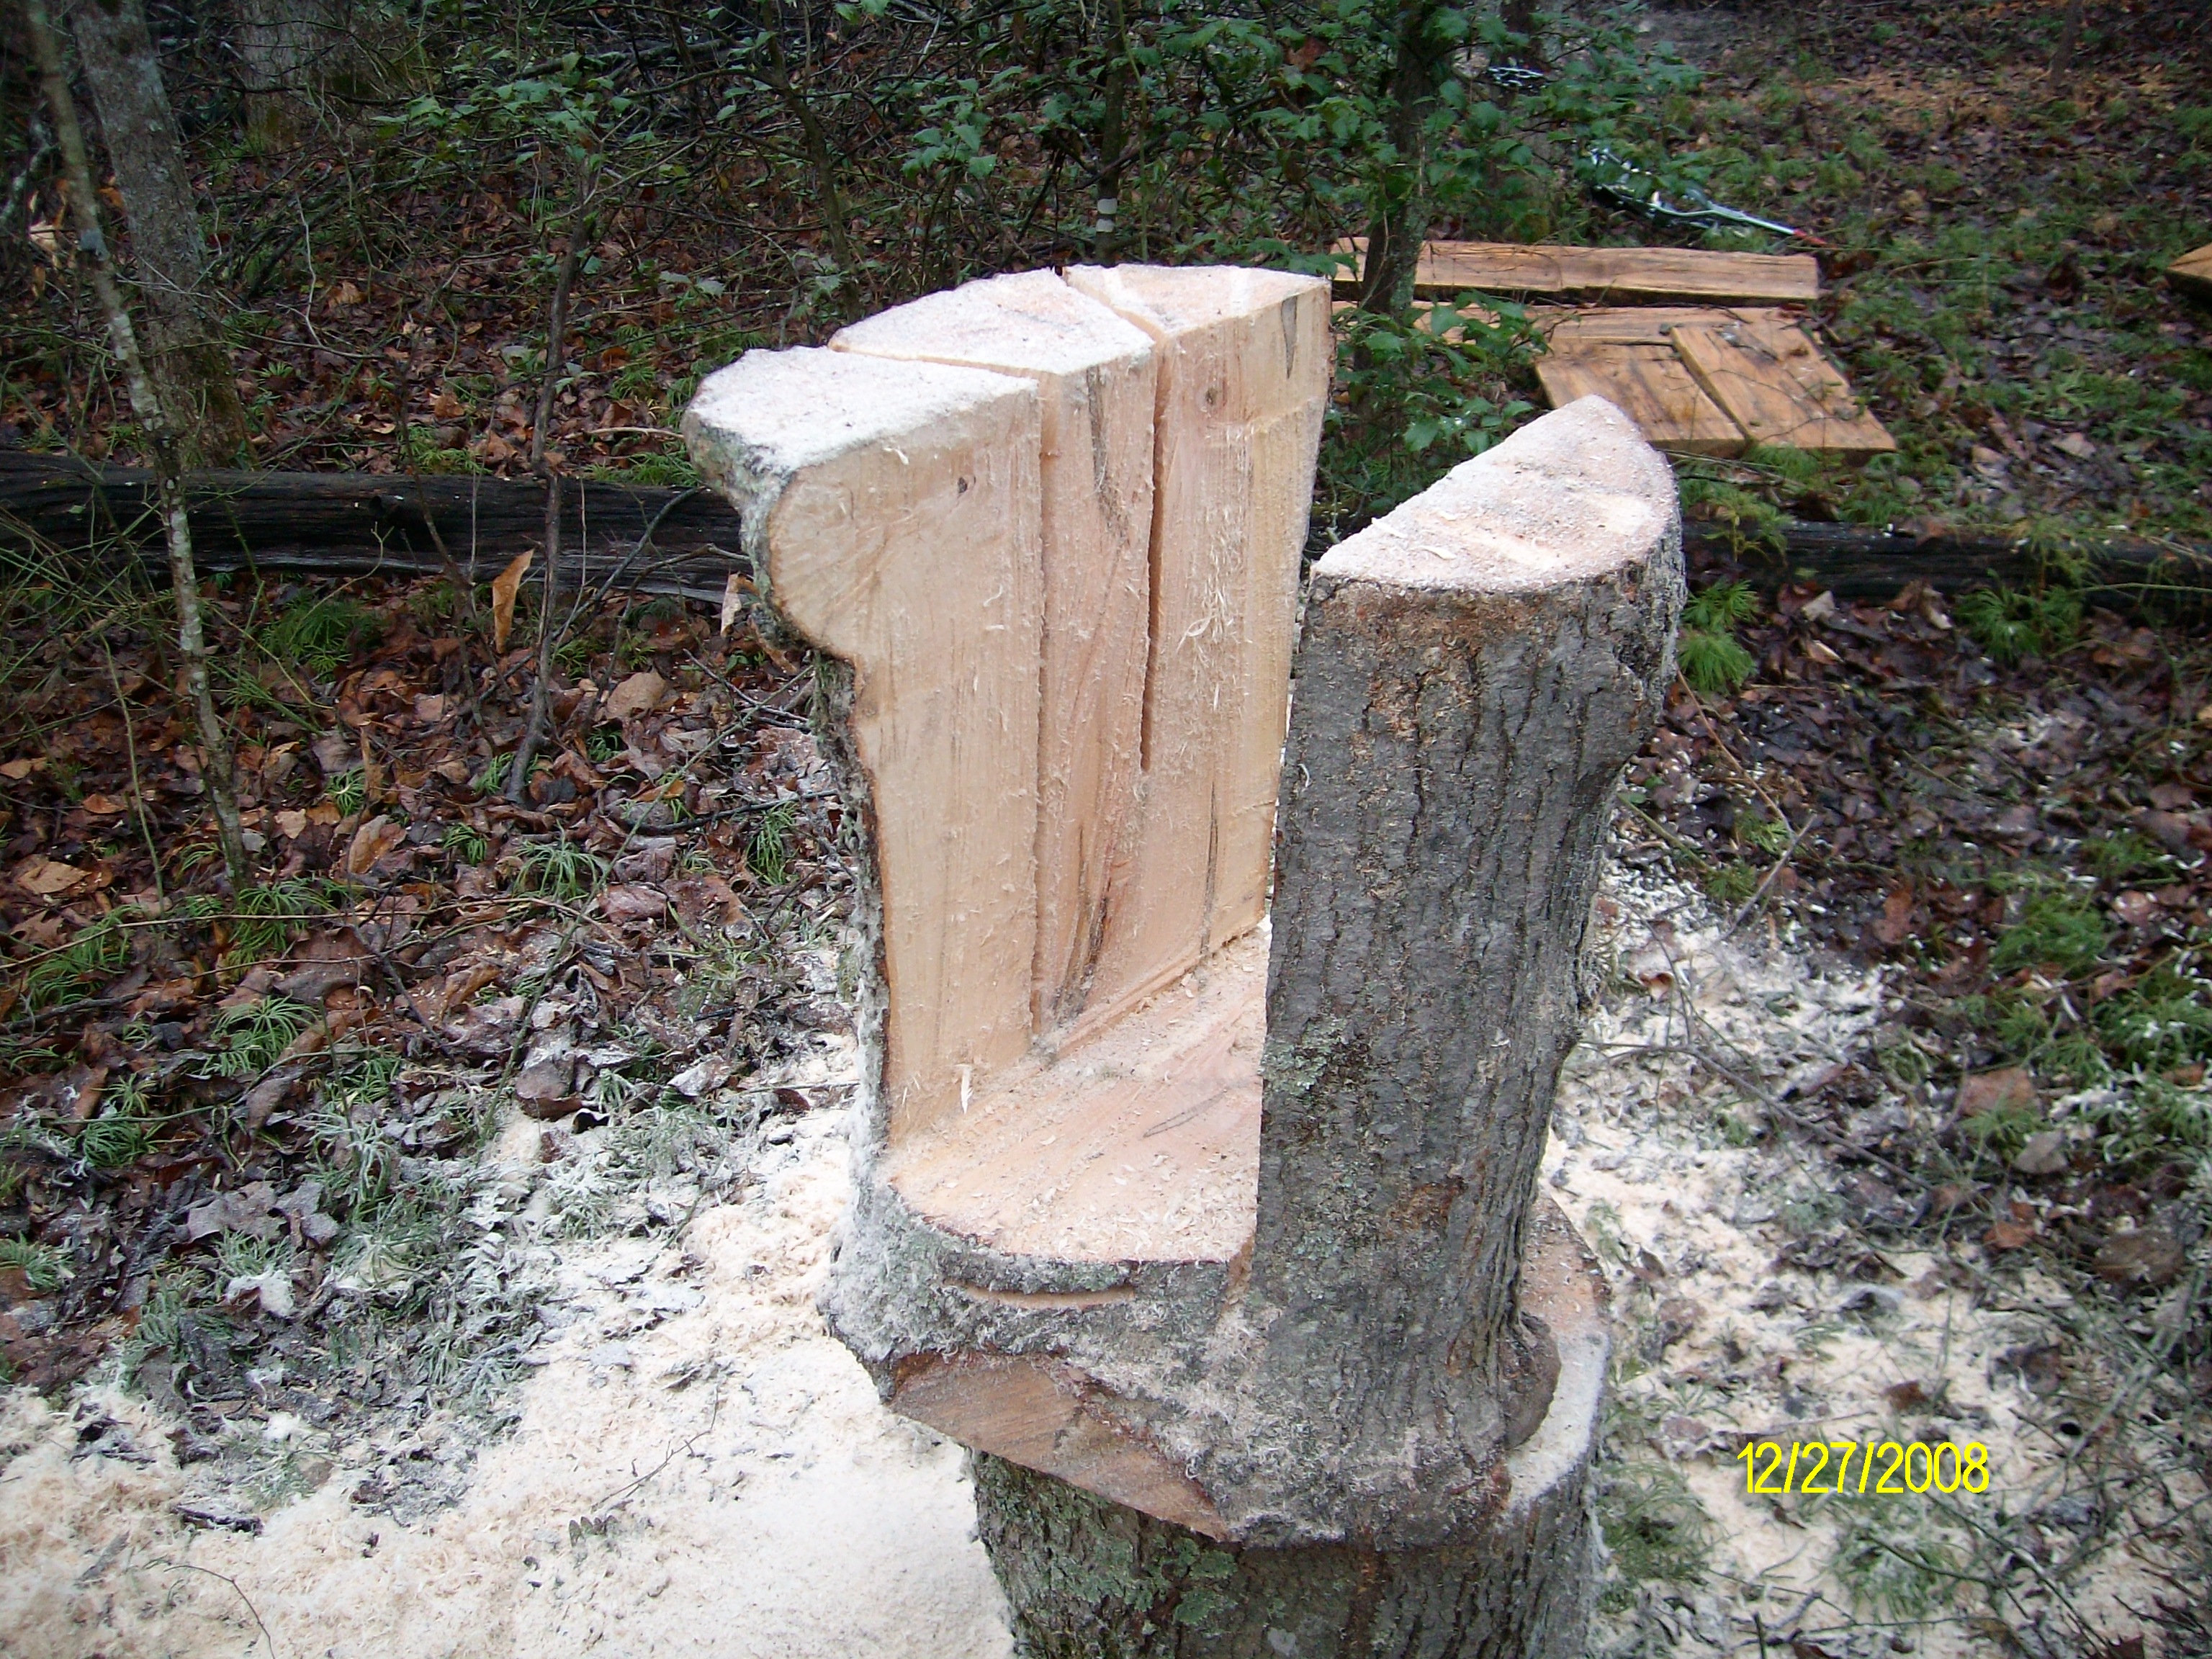 Building stump tables